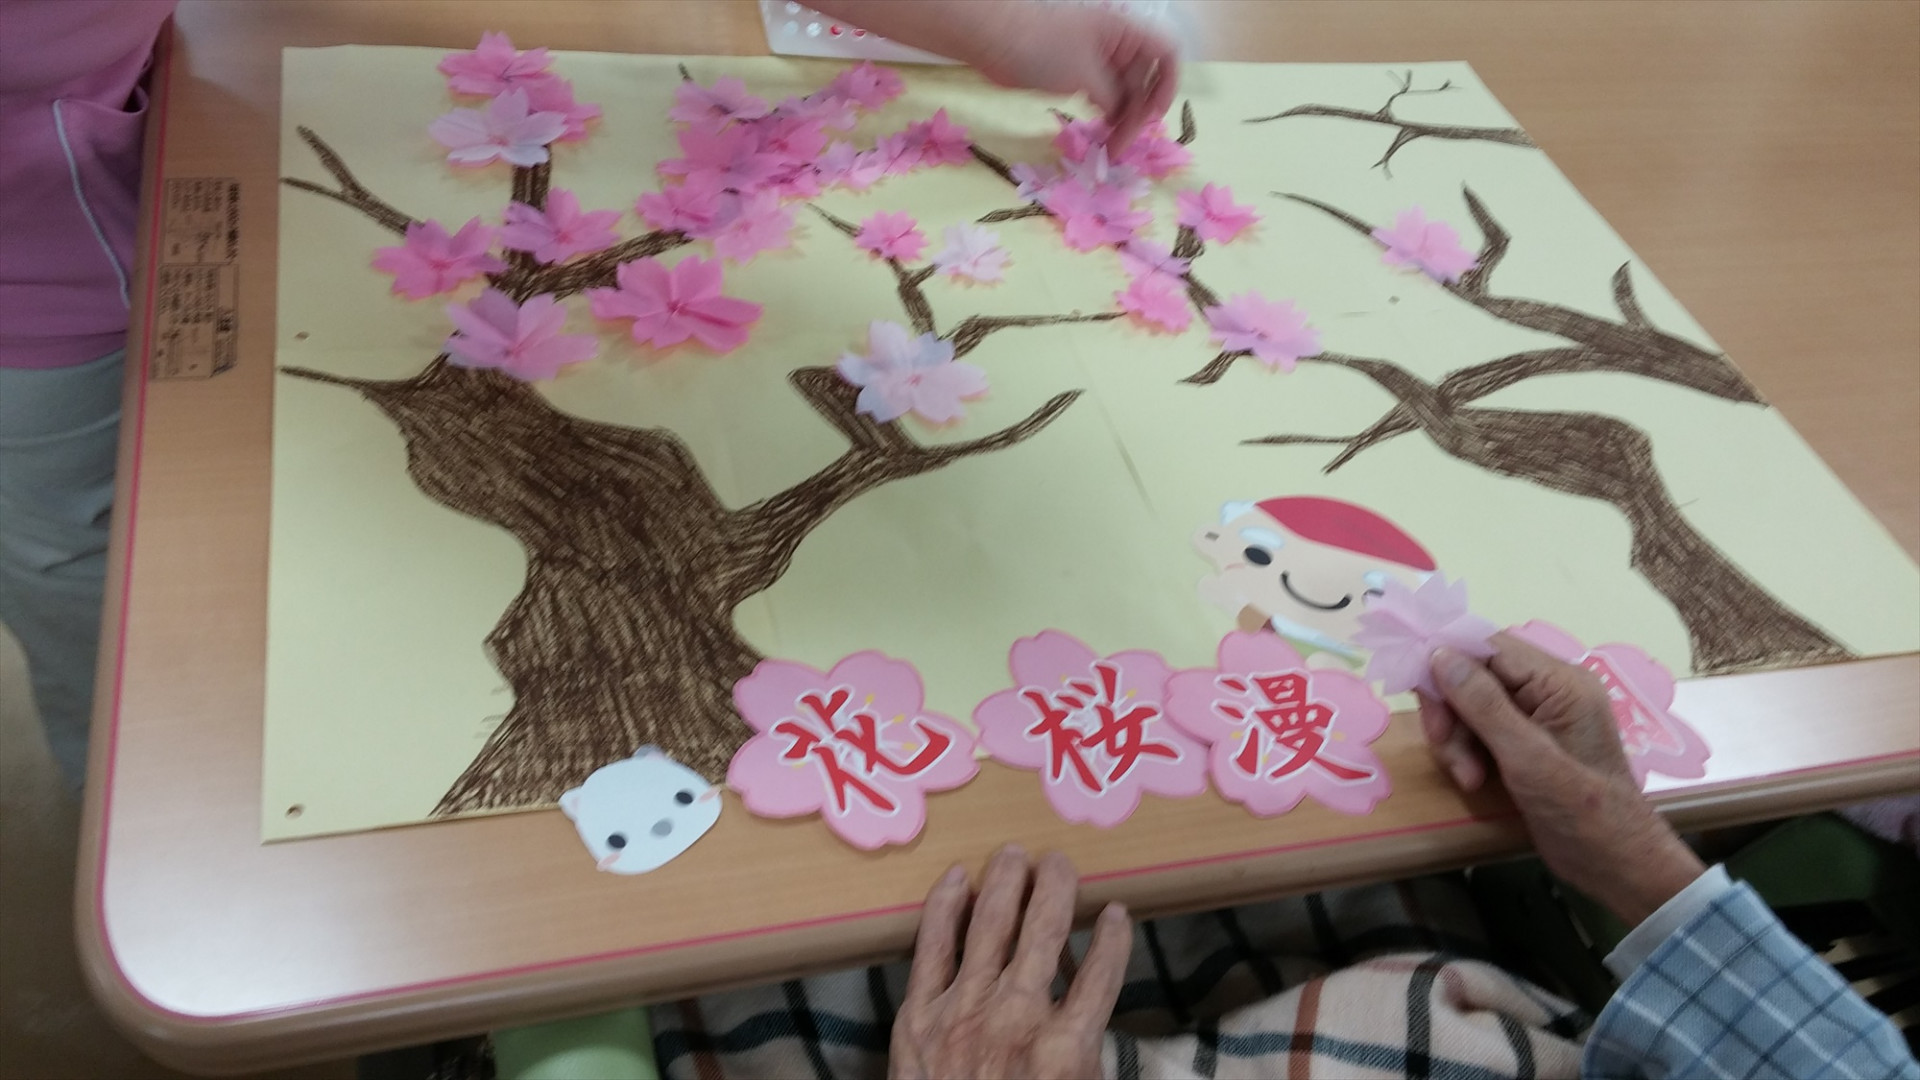 春爛漫 恵に桜咲く 高松市の老人ホーム レインボー恵はブログにて施設を紹介